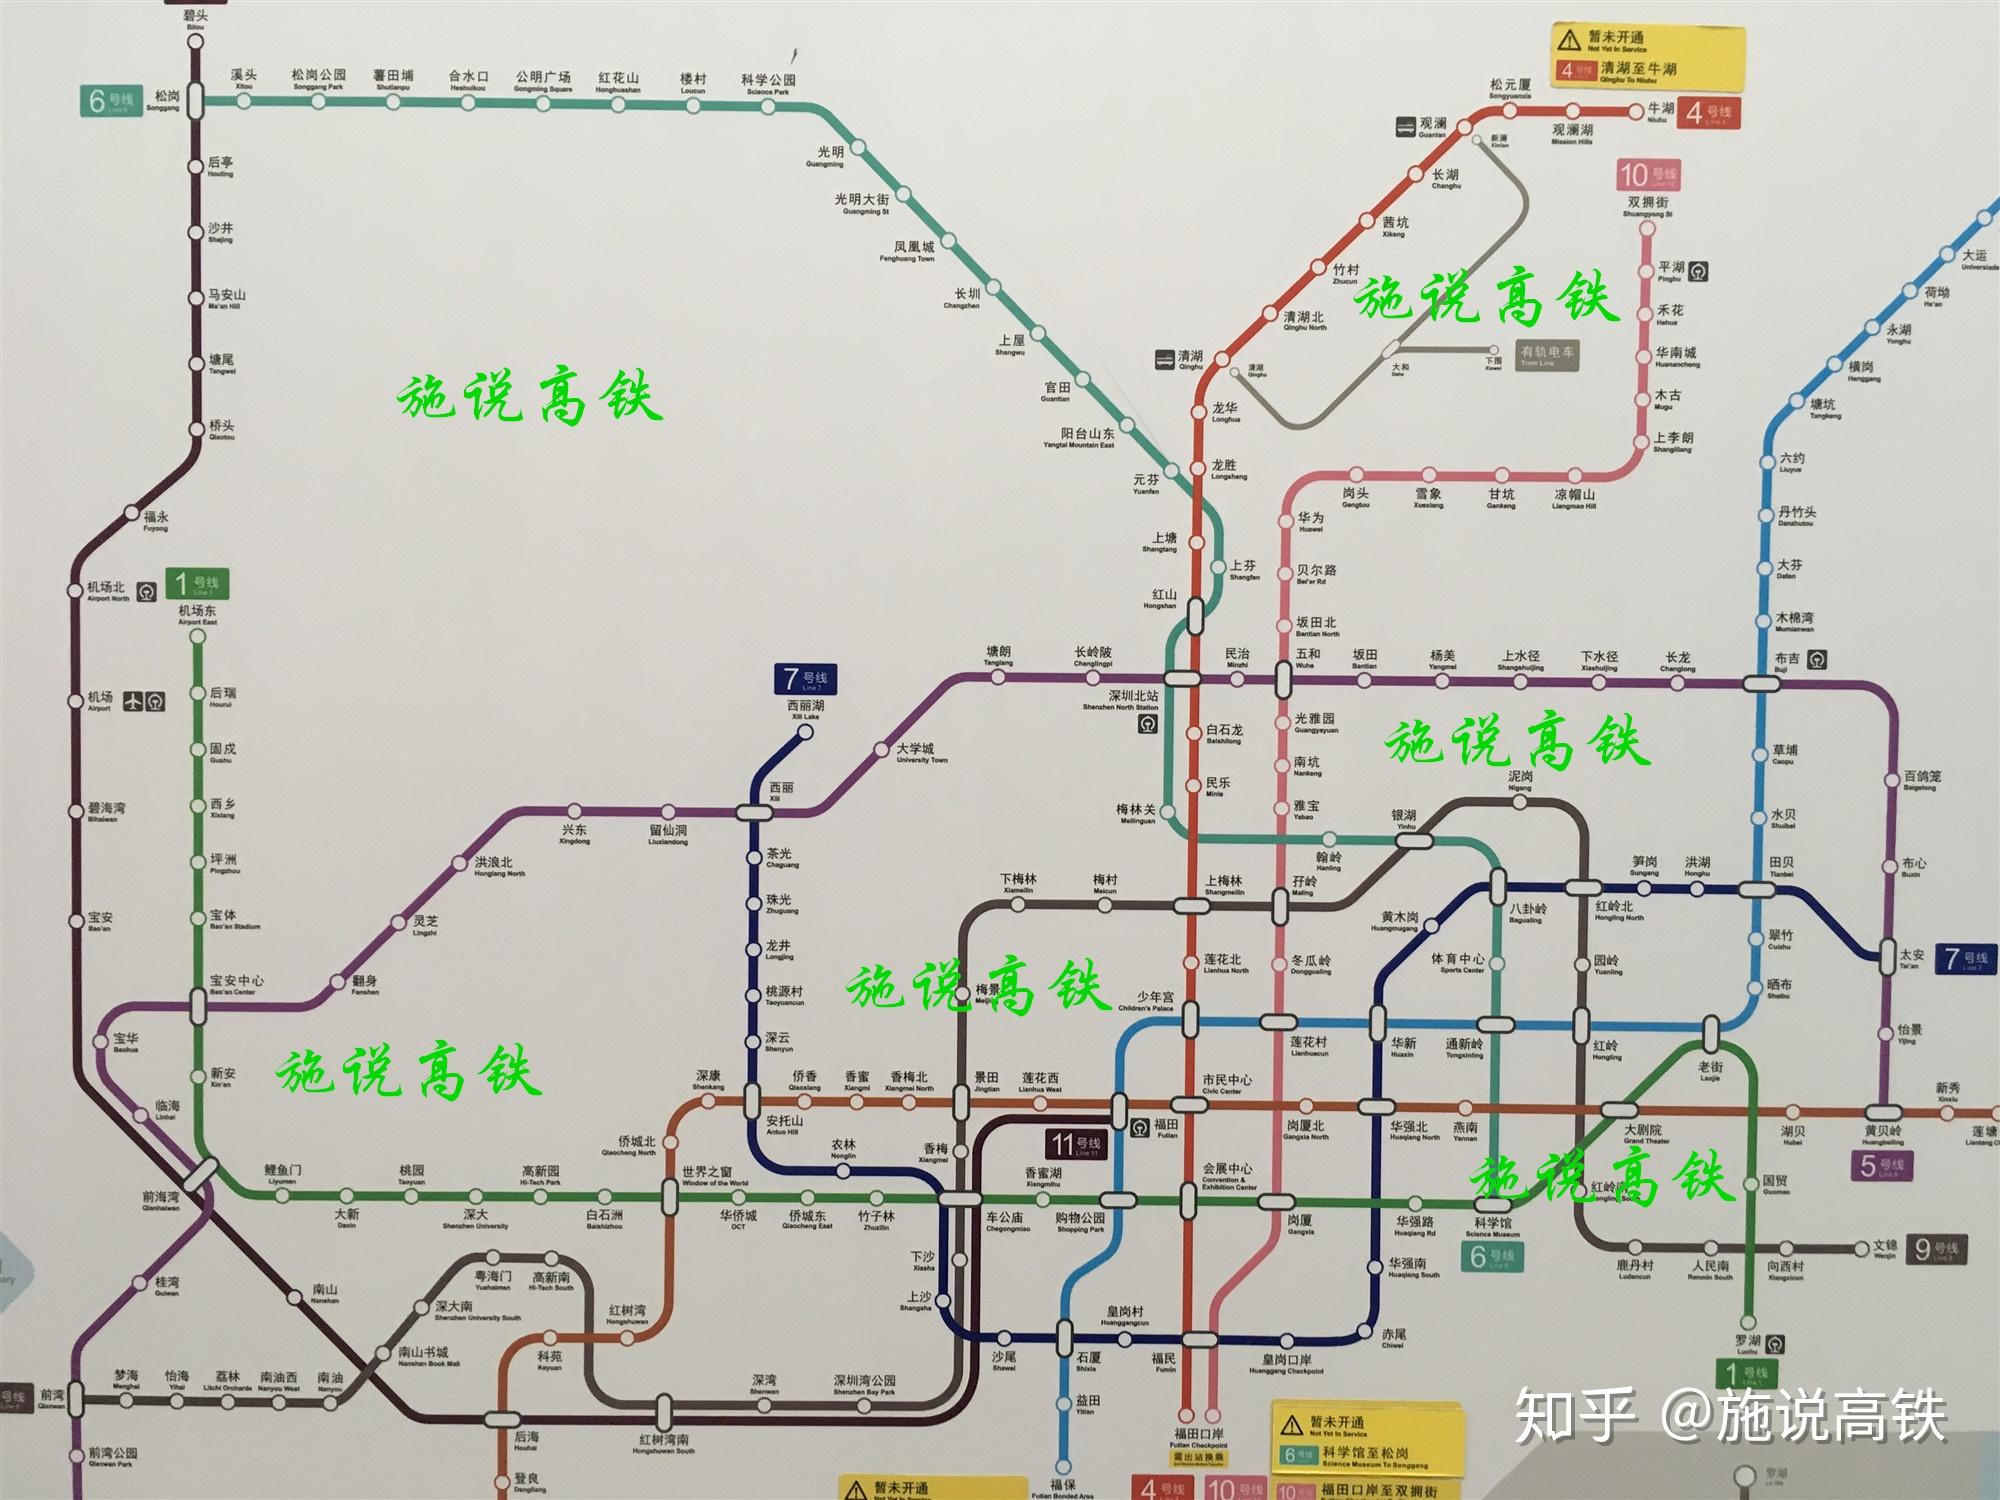 深圳地铁六号线开通运营后,将与深圳地铁十一号线在松岗站实现互联